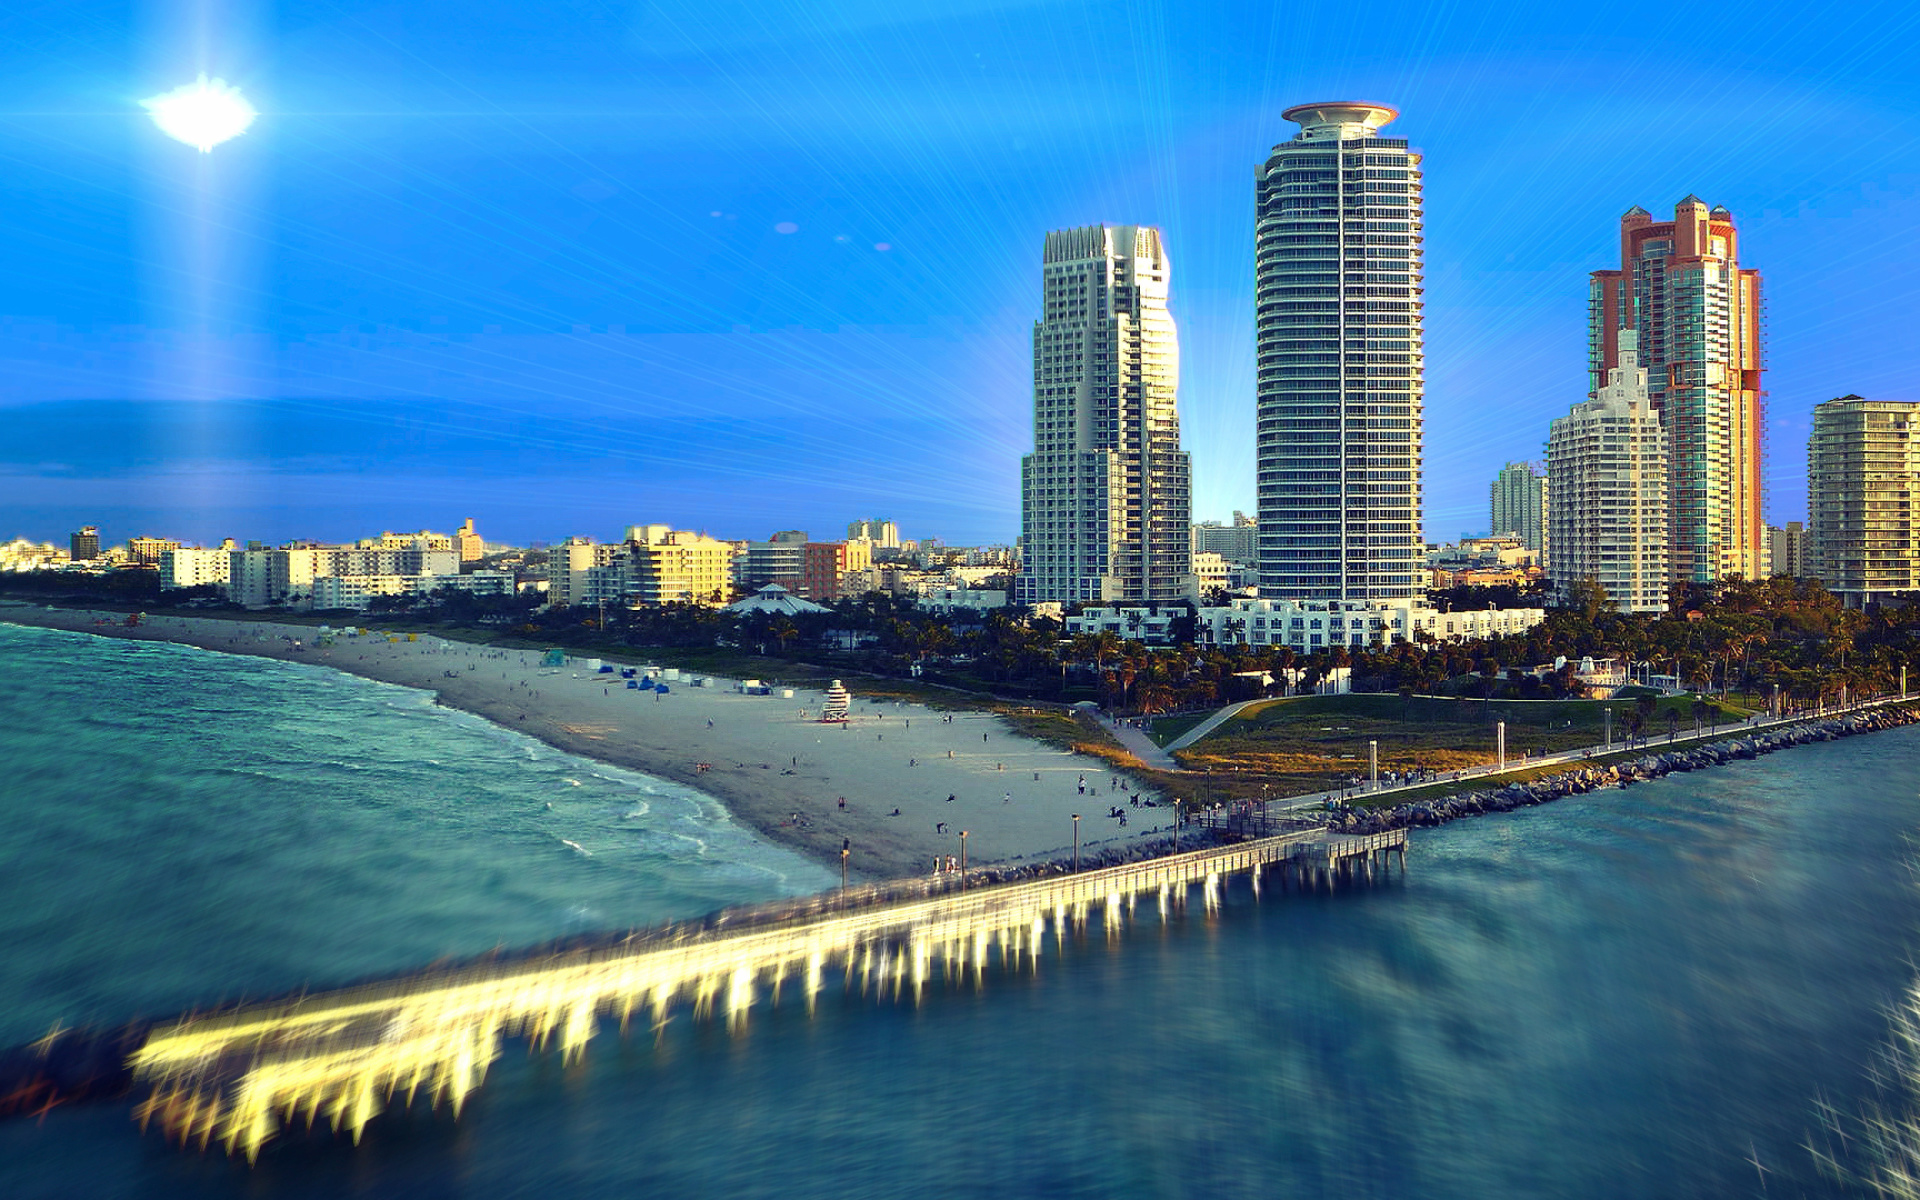 Обои Miami Beach with Hotels 1920x1200